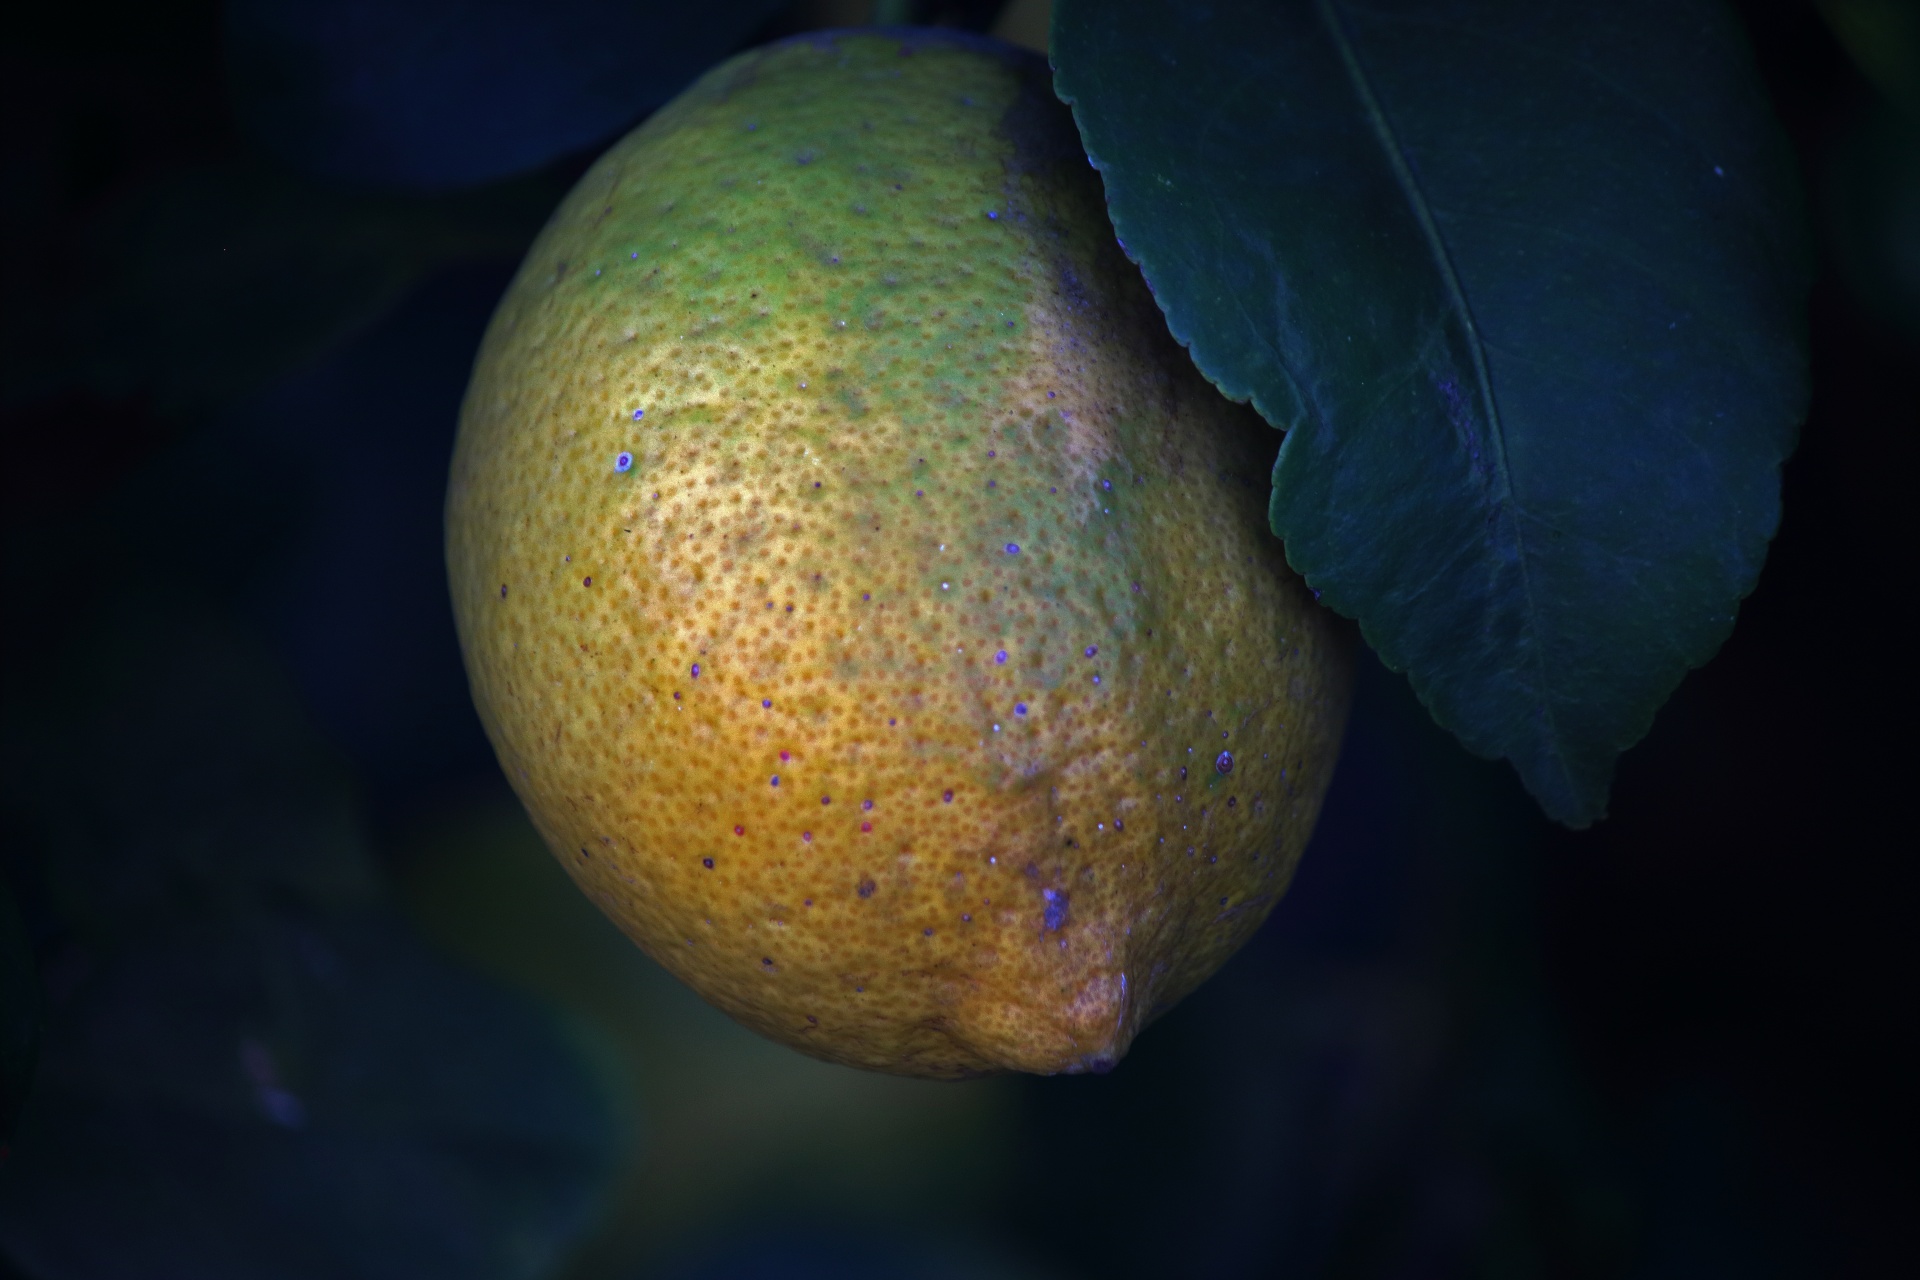 Vista de maduración de limón en un árbol